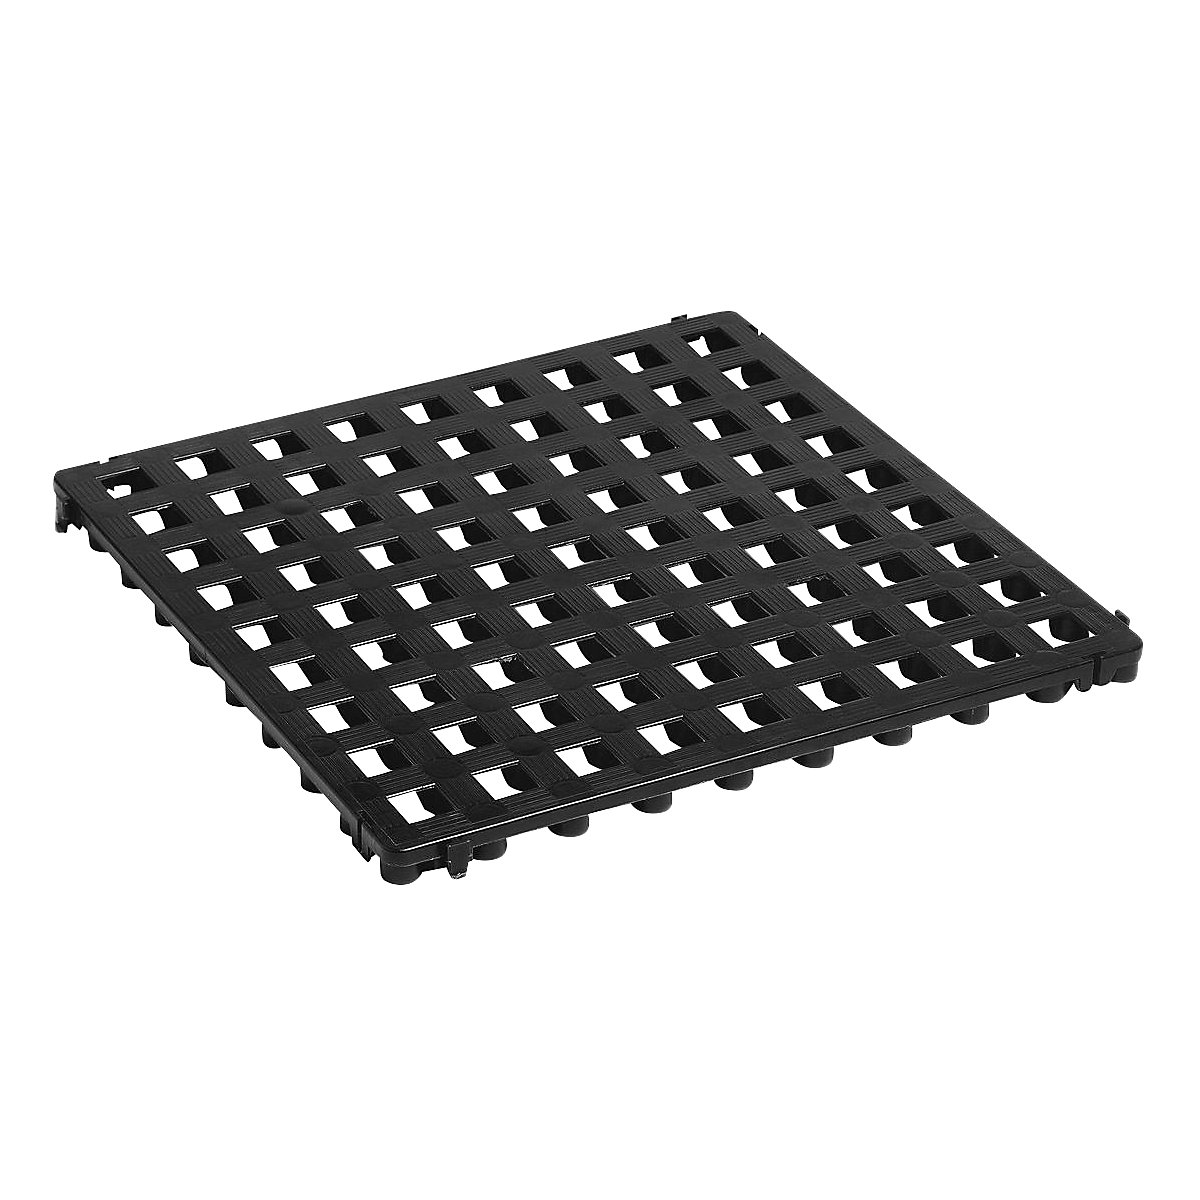 Plastic floor tile, polyethylene, 500 x 500 mm, standard, pack of 20, black